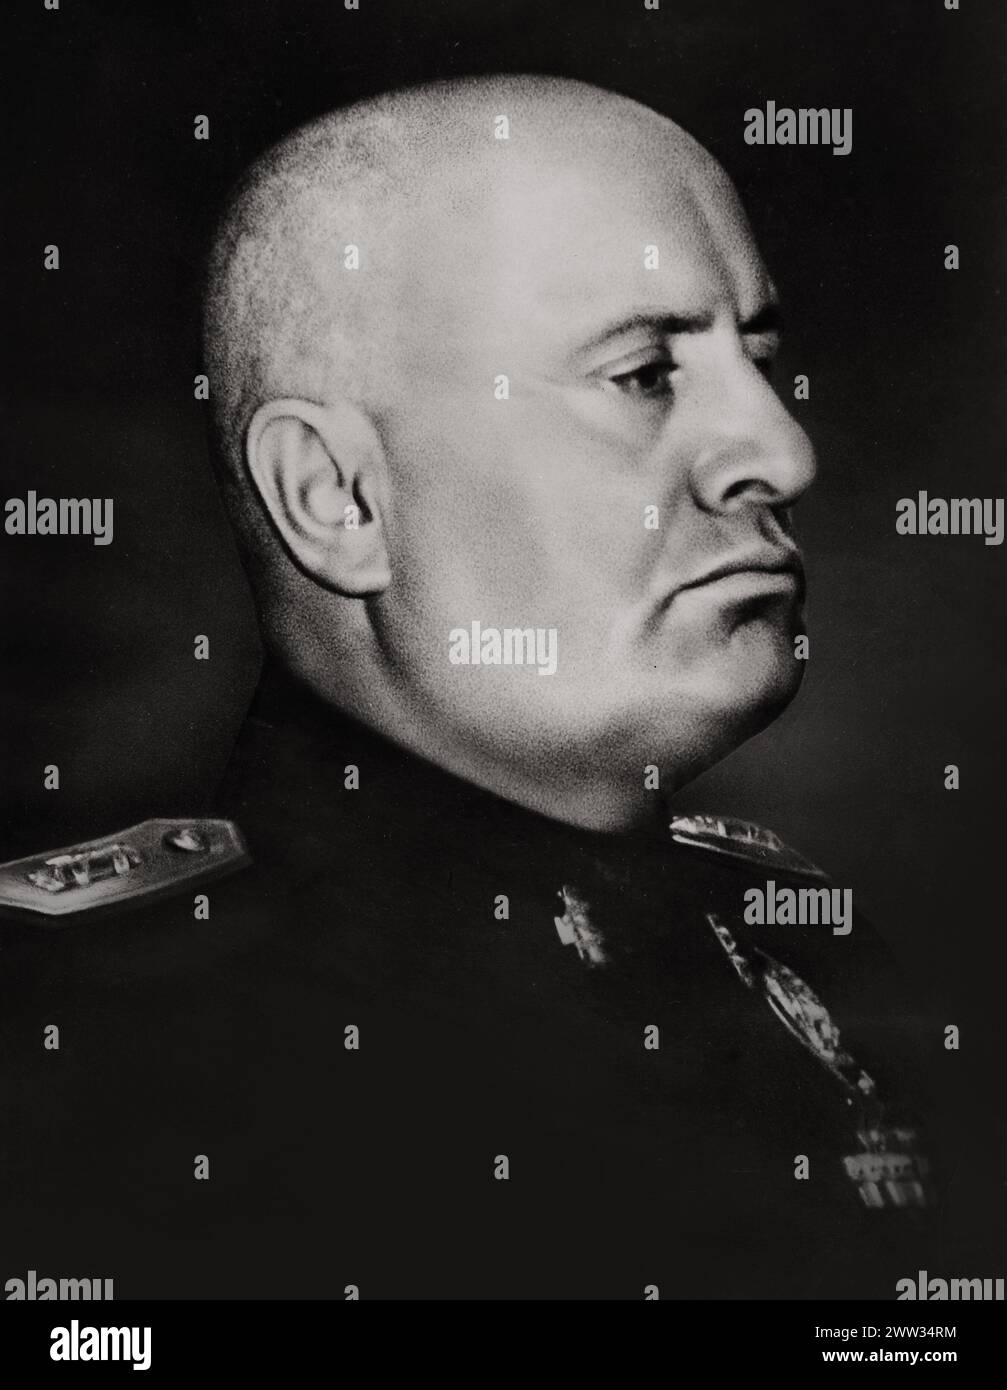 Portrait de Benito Mussolini en tant que dictateur de l'Italie (entre 1922 et 1943), publié en 1943 à l'occasion de son 60e anniversaire Banque D'Images